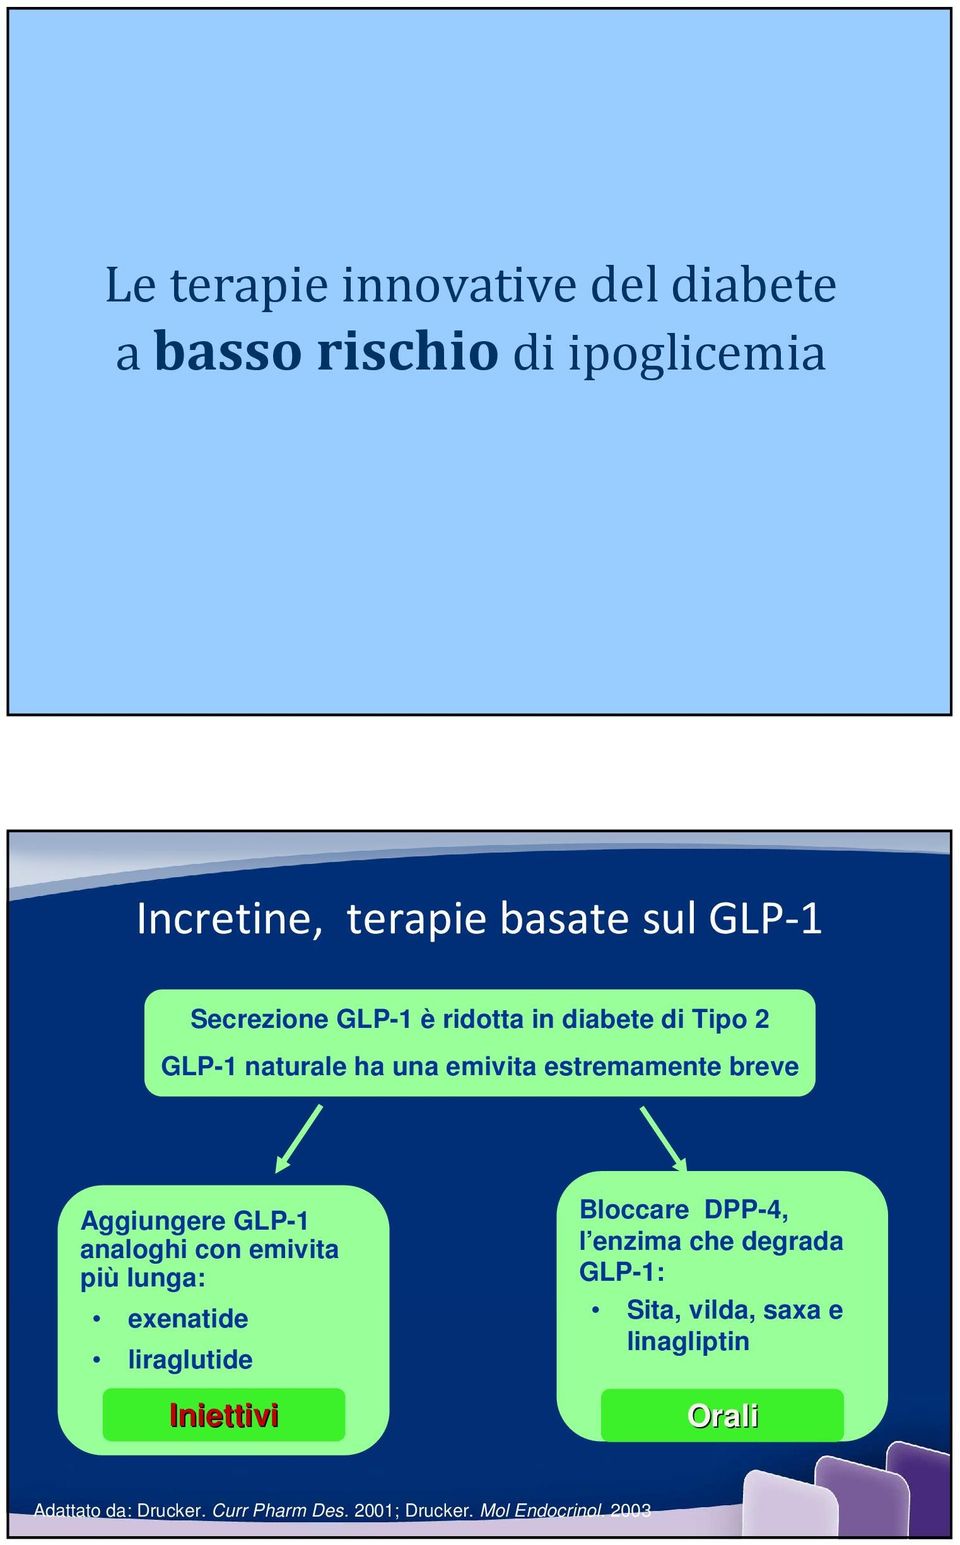 GLP-1 analoghi con emivita più lunga: exenatide liraglutide Iniettivi Bloccare DPP-4, l enzima che degrada